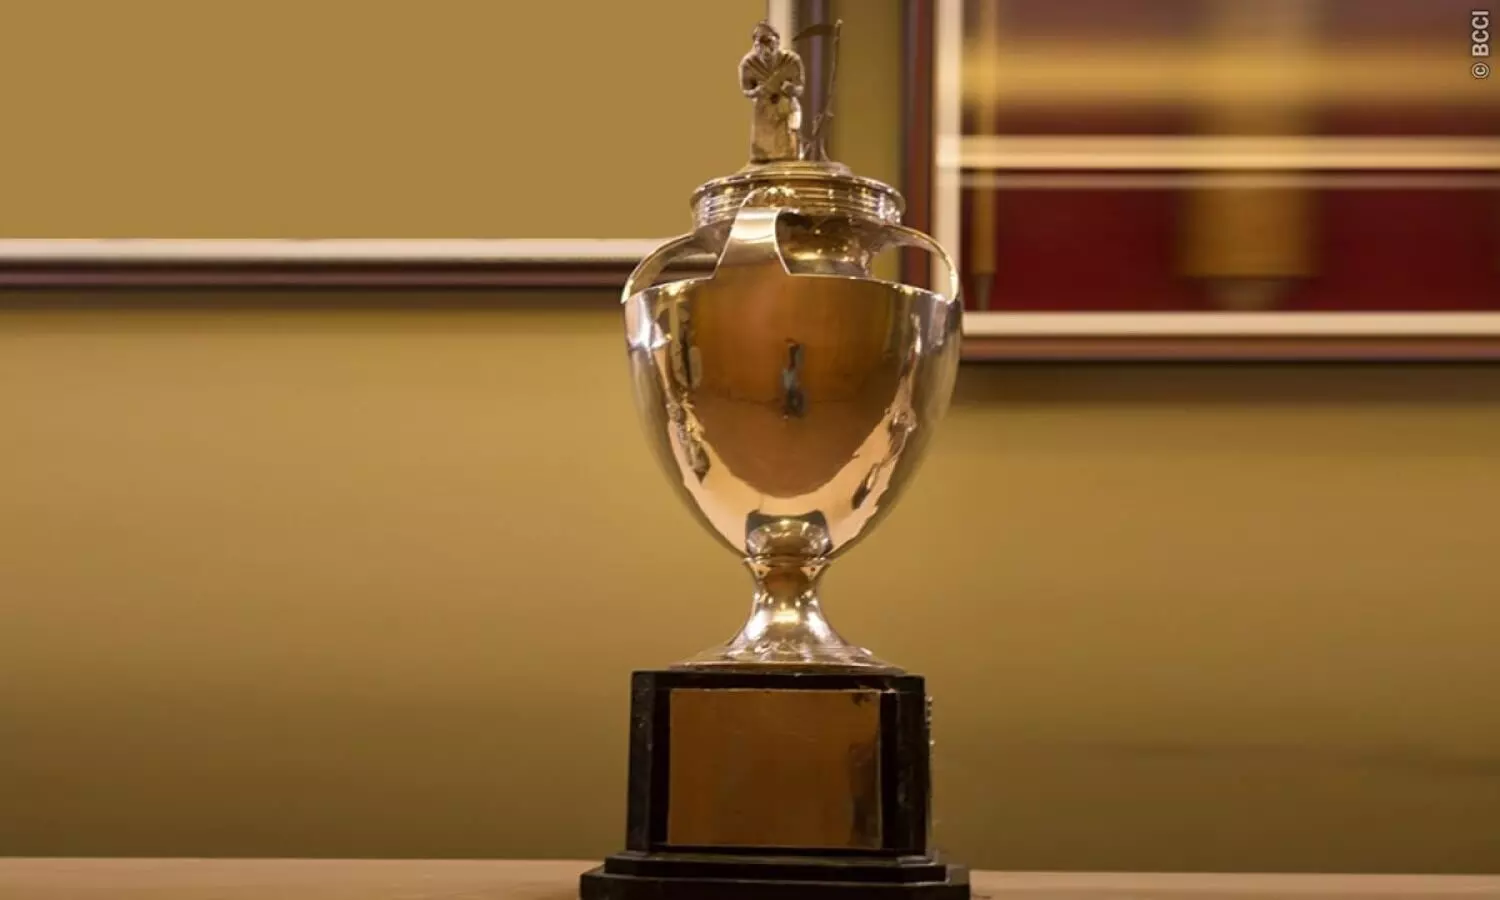 घरेलू टूर्नामेंट की प्राइज मनी बढ़ाएगी बीसीसीआई, 49 साल पुराने देवधर ट्रॉफी को हटाया गया